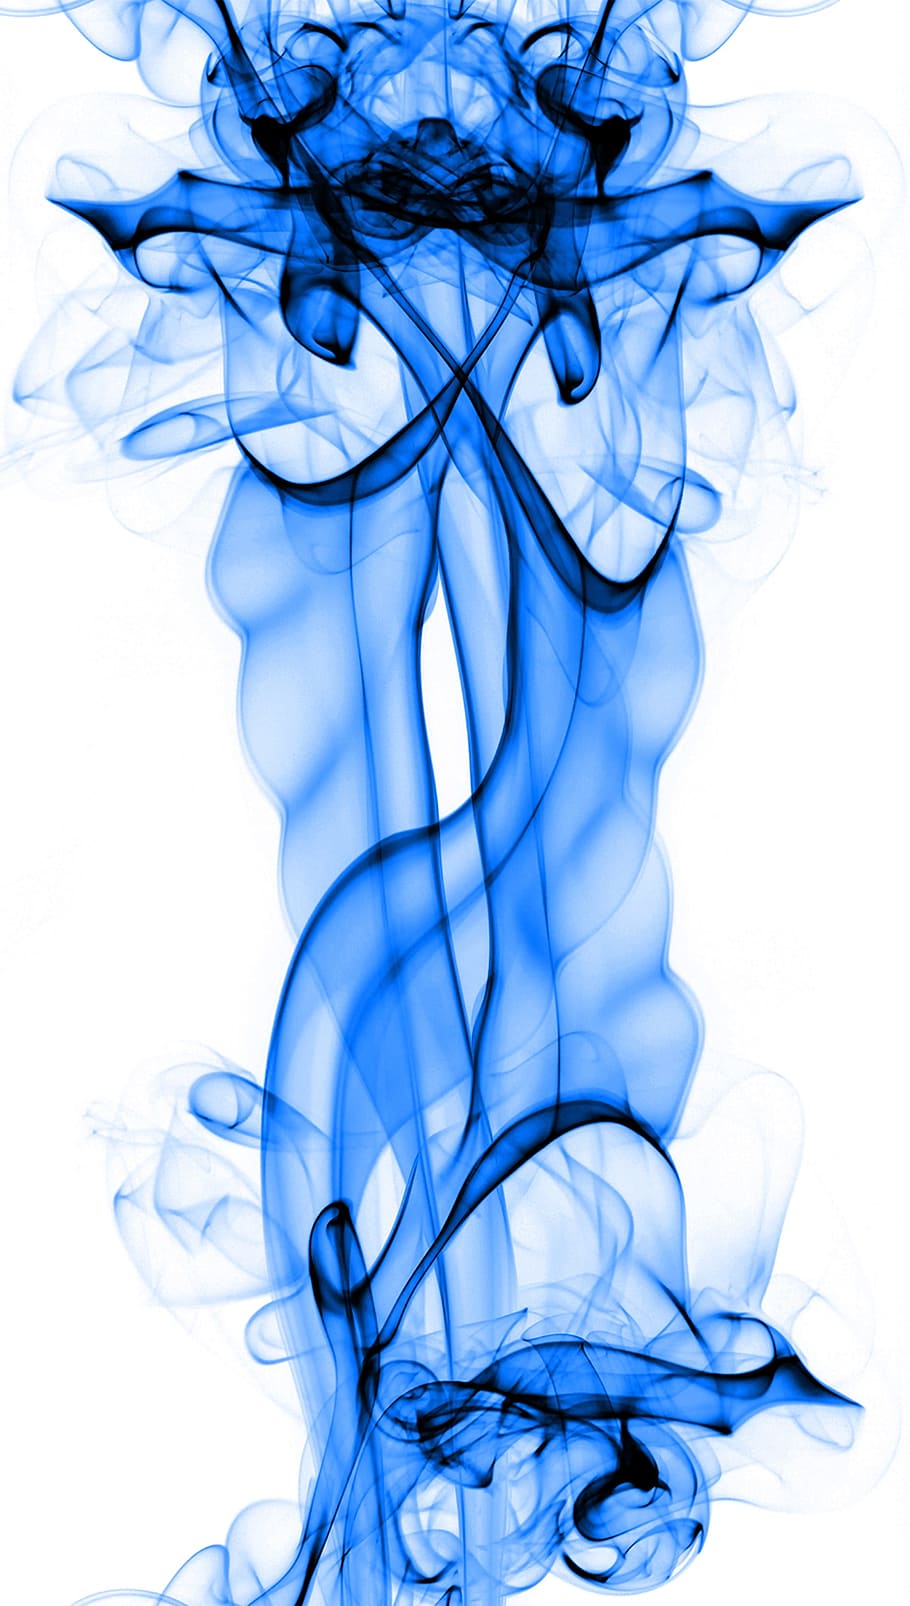 青い煙 青 煙 透明 滑らか 抽象化 クローズアップ モーション 渦巻き スタジオ撮影 Pxfuel